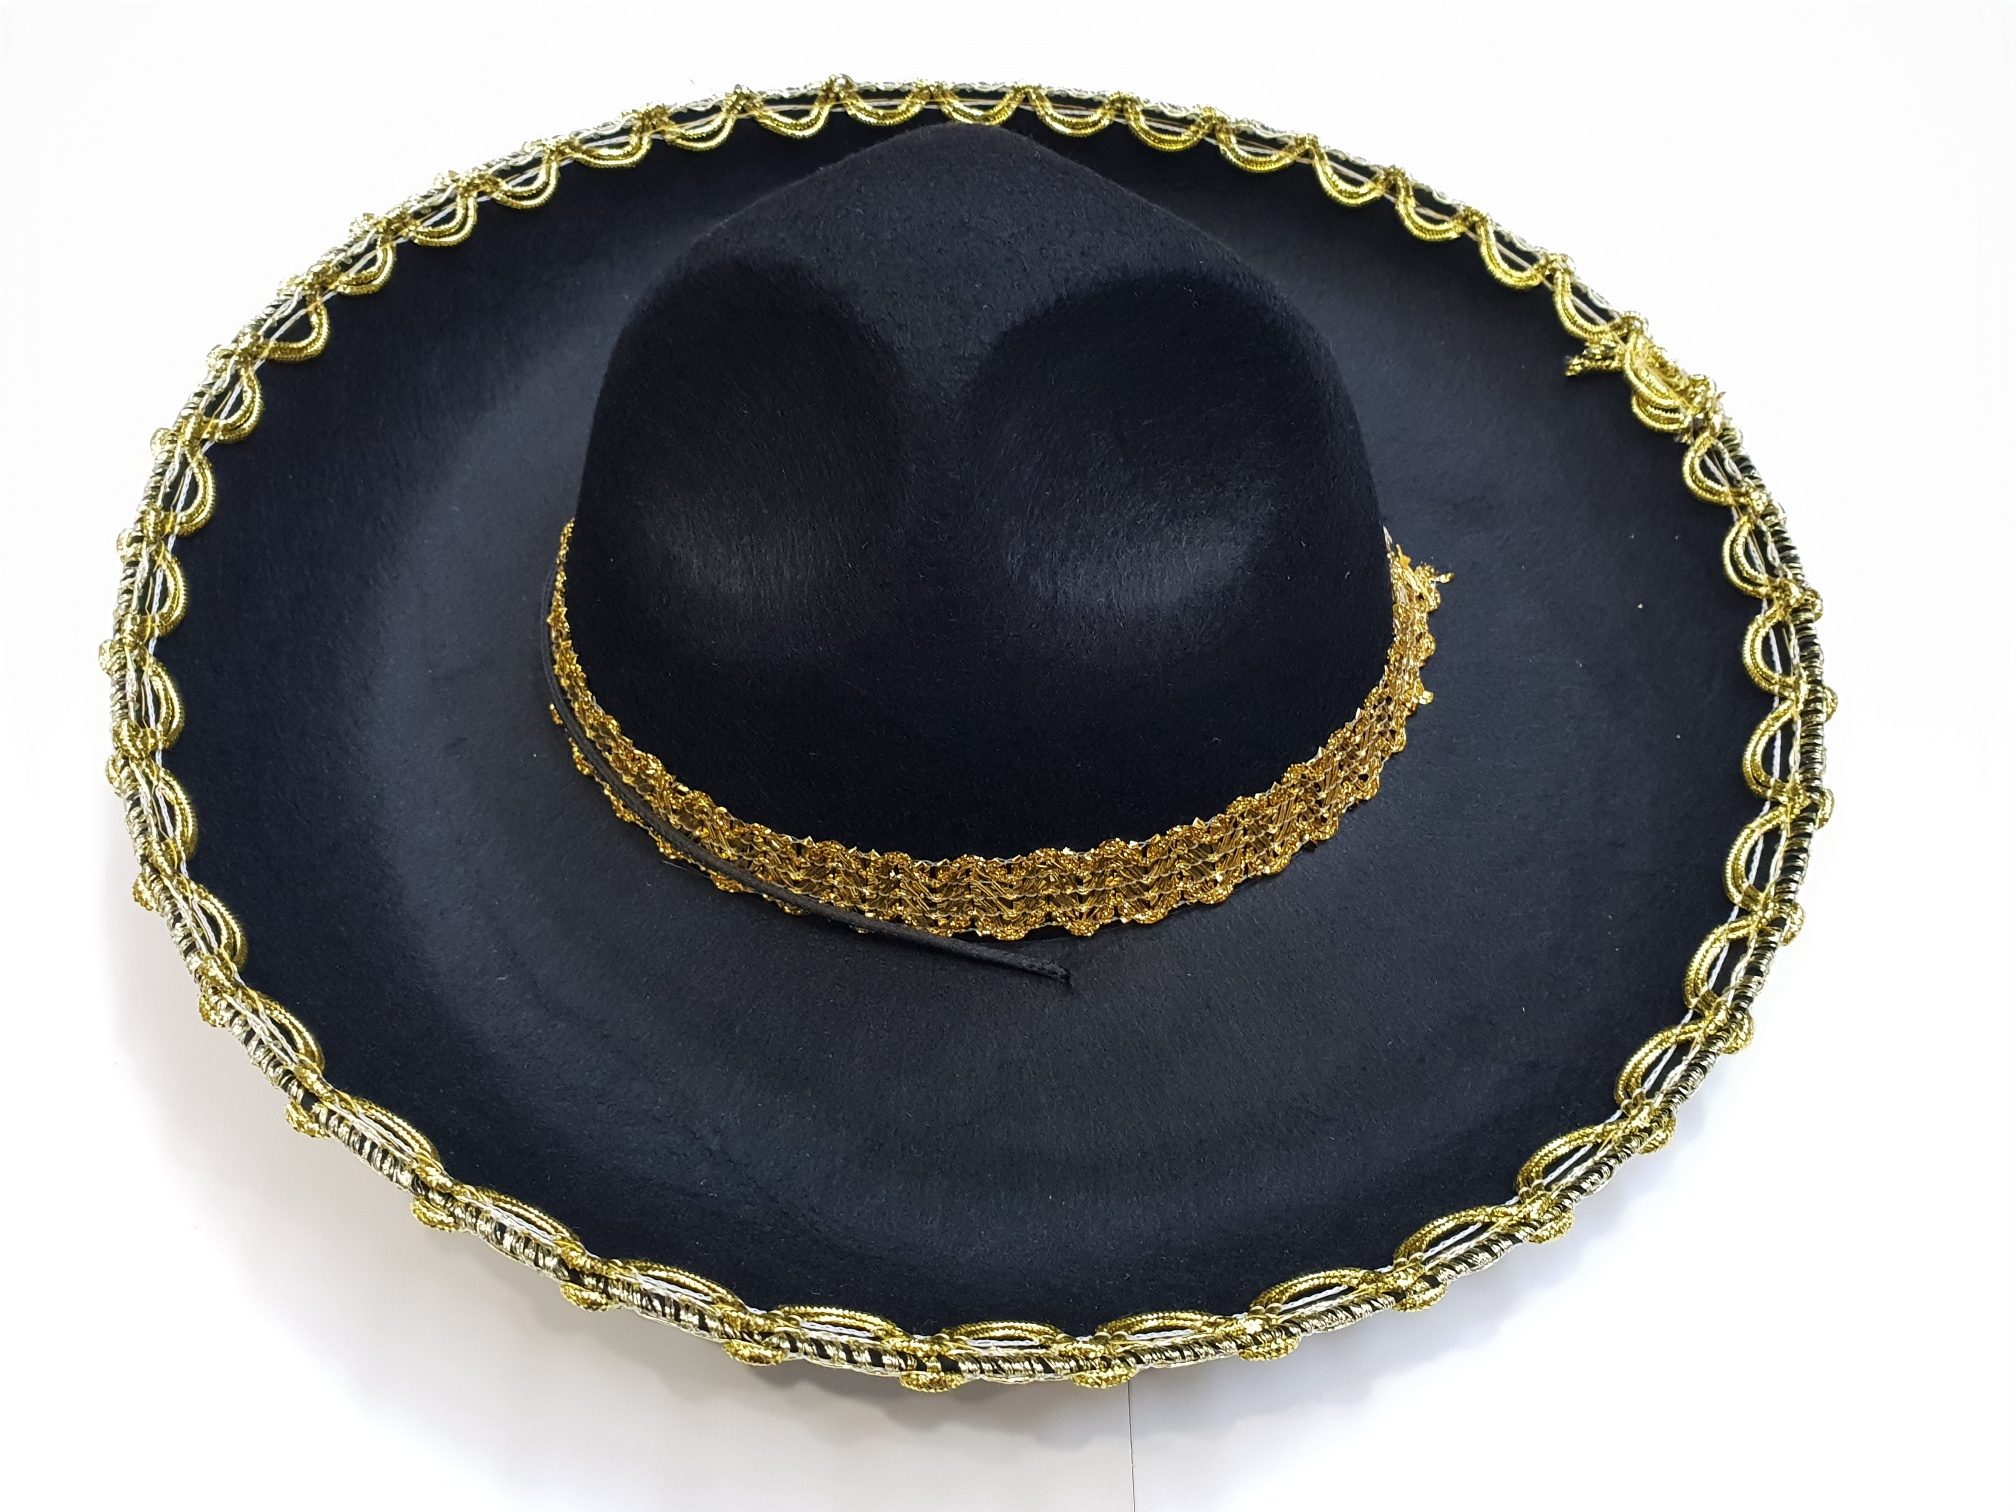 Altın Renk Şeritli Meksika Mariachi Latin Şapkası 55 cm Çocuk (Lisinya)